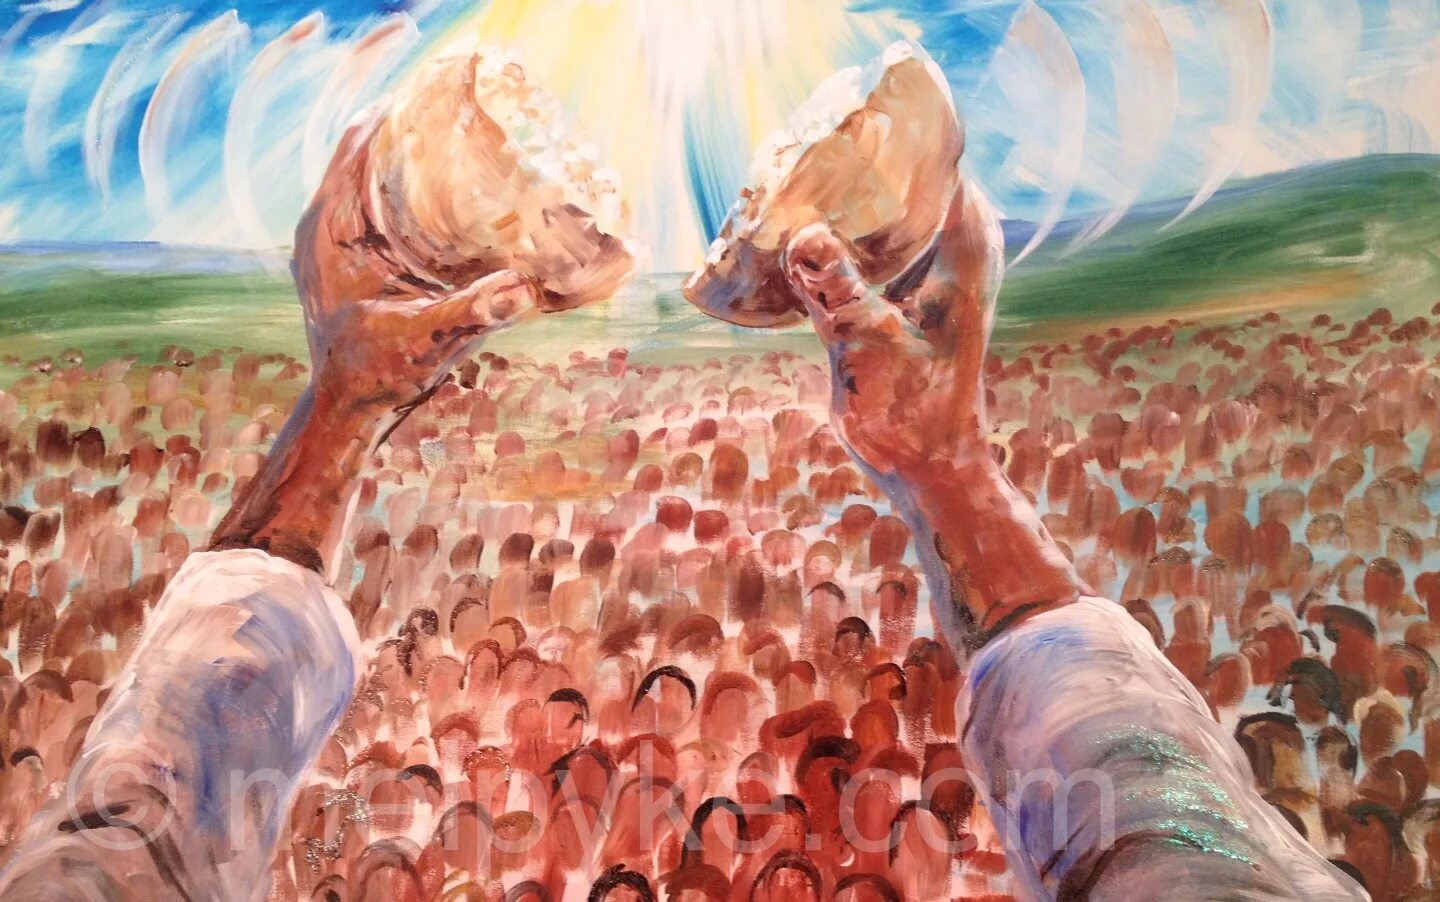 Иисус Христос и 5 хлебов. Иисус накормил 5000 человек 5 хлебами и 2 рыбами. Иисус 5000 люди. Пророческая живопись.